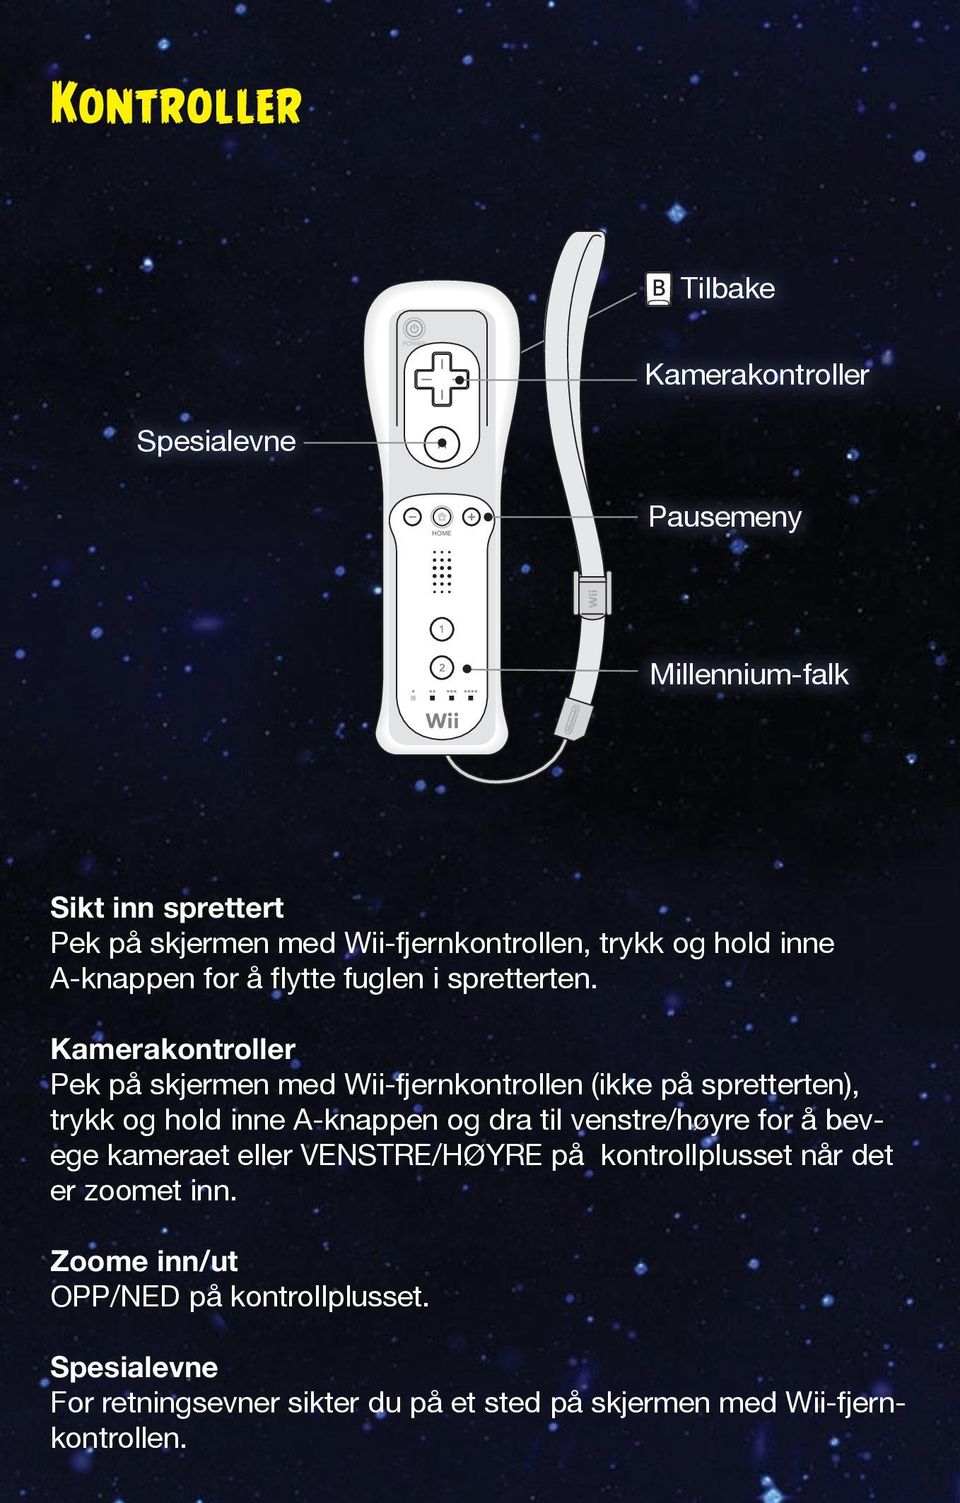 Kamerakontroller Pek på skjermen med Wii-fjernkontrollen (ikke på spretterten), trykk og hold inne A-knappen og dra til venstre/høyre